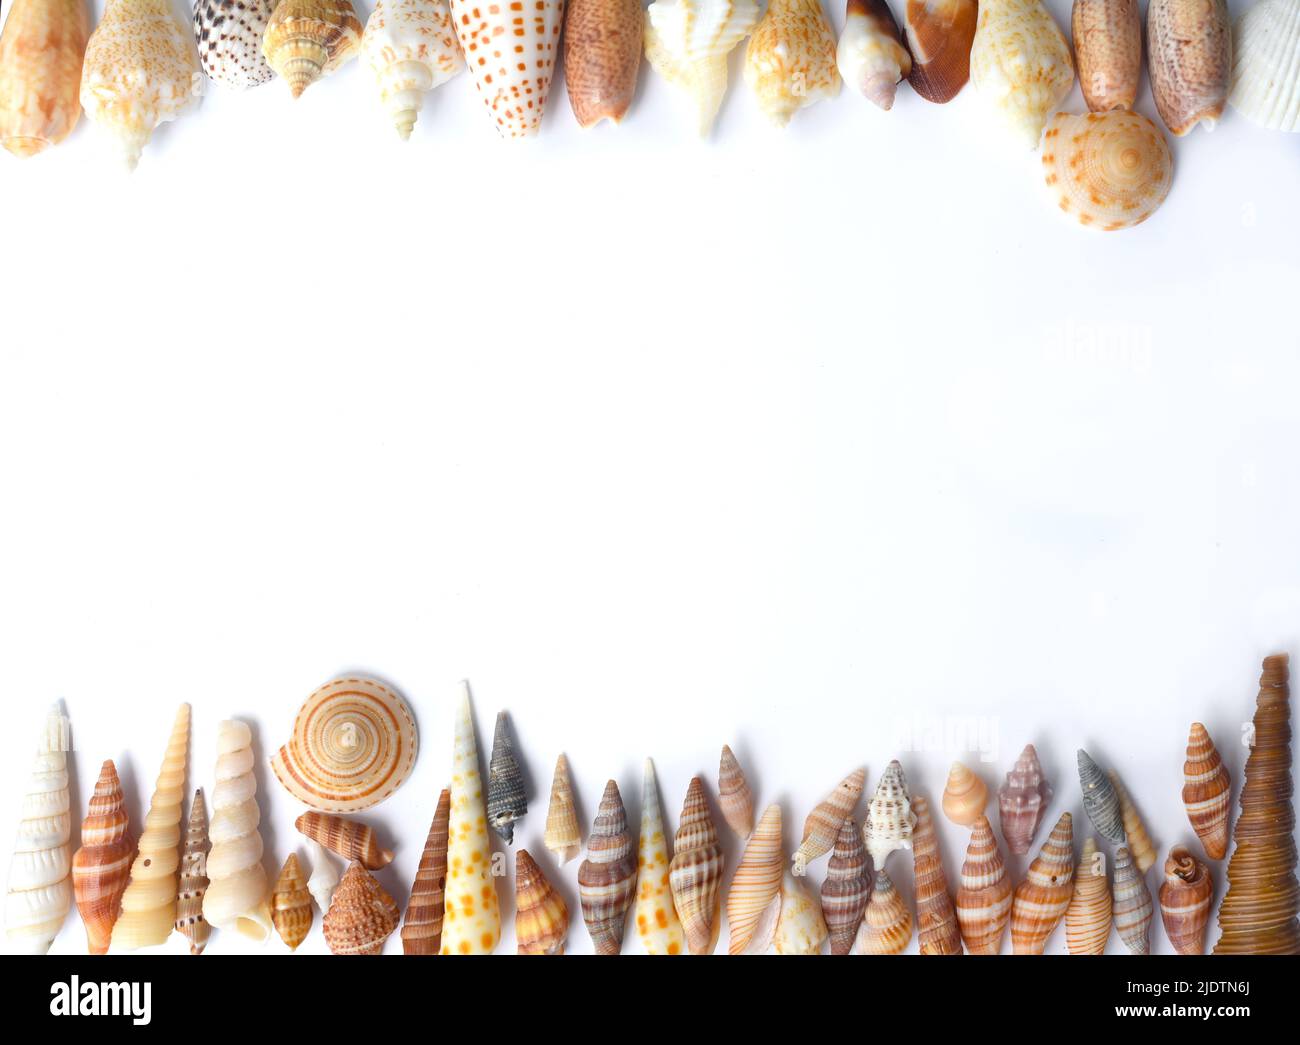 Conchas marinas tropicales sobre fondo blanco Foto de stock